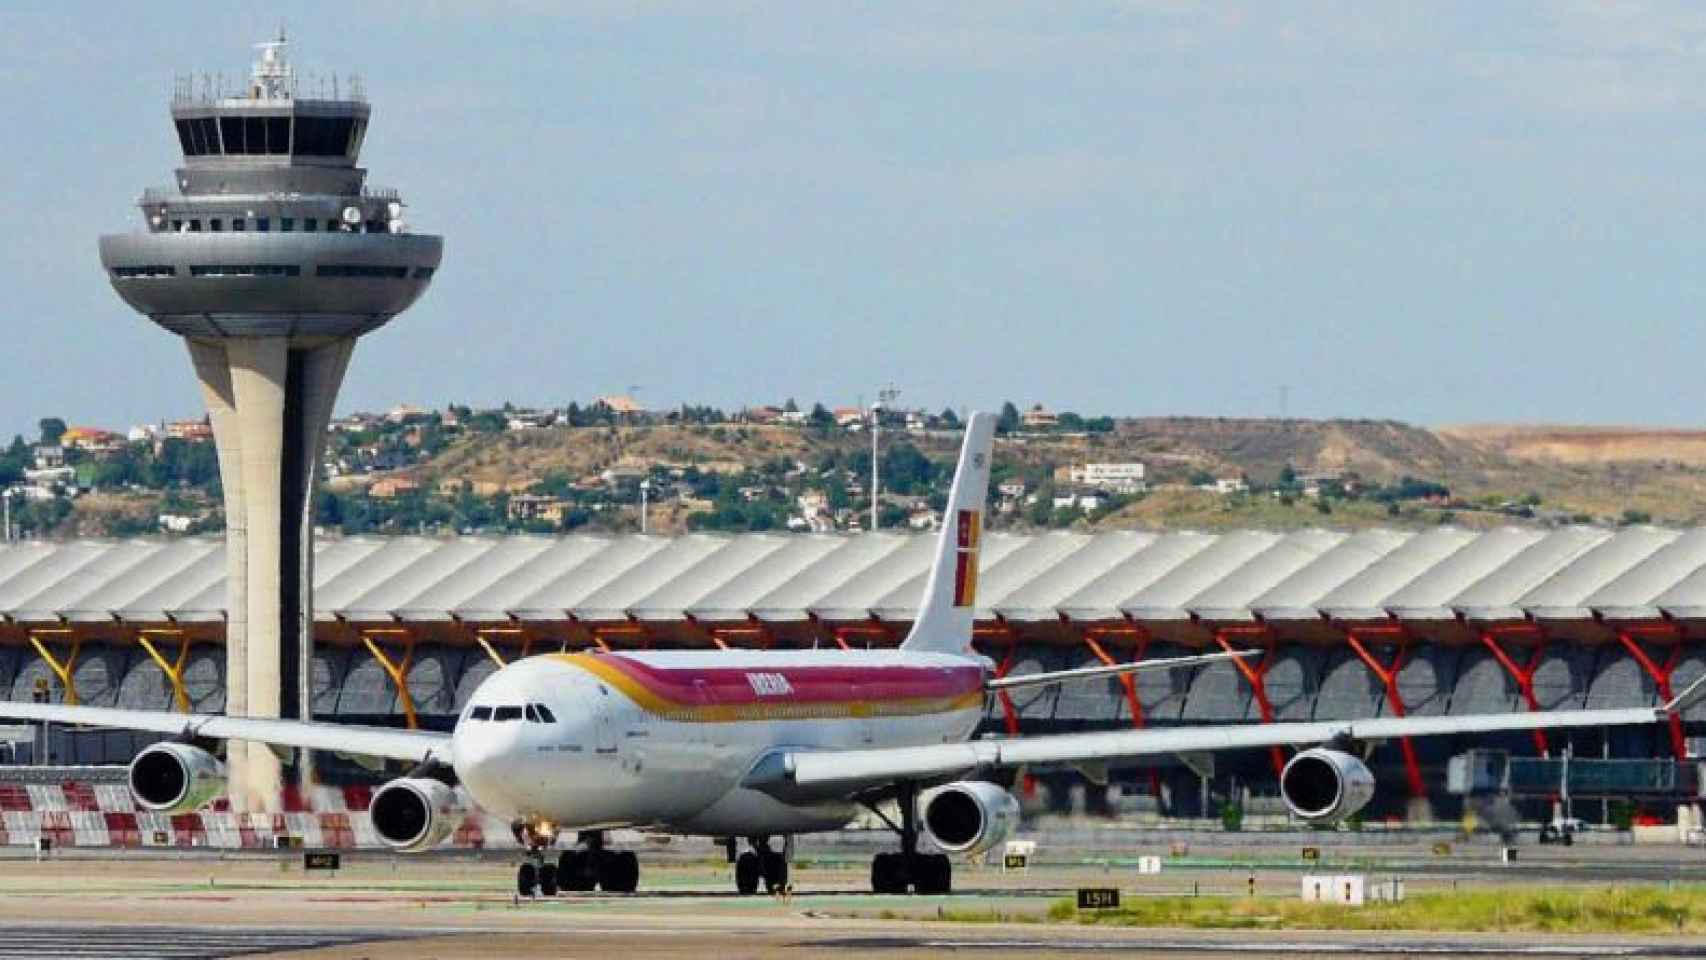 El exterior del Aeropuerto Adolfo Suárez Madrid-Barajas, operado por Aena, en una imagen de archivo / EFE